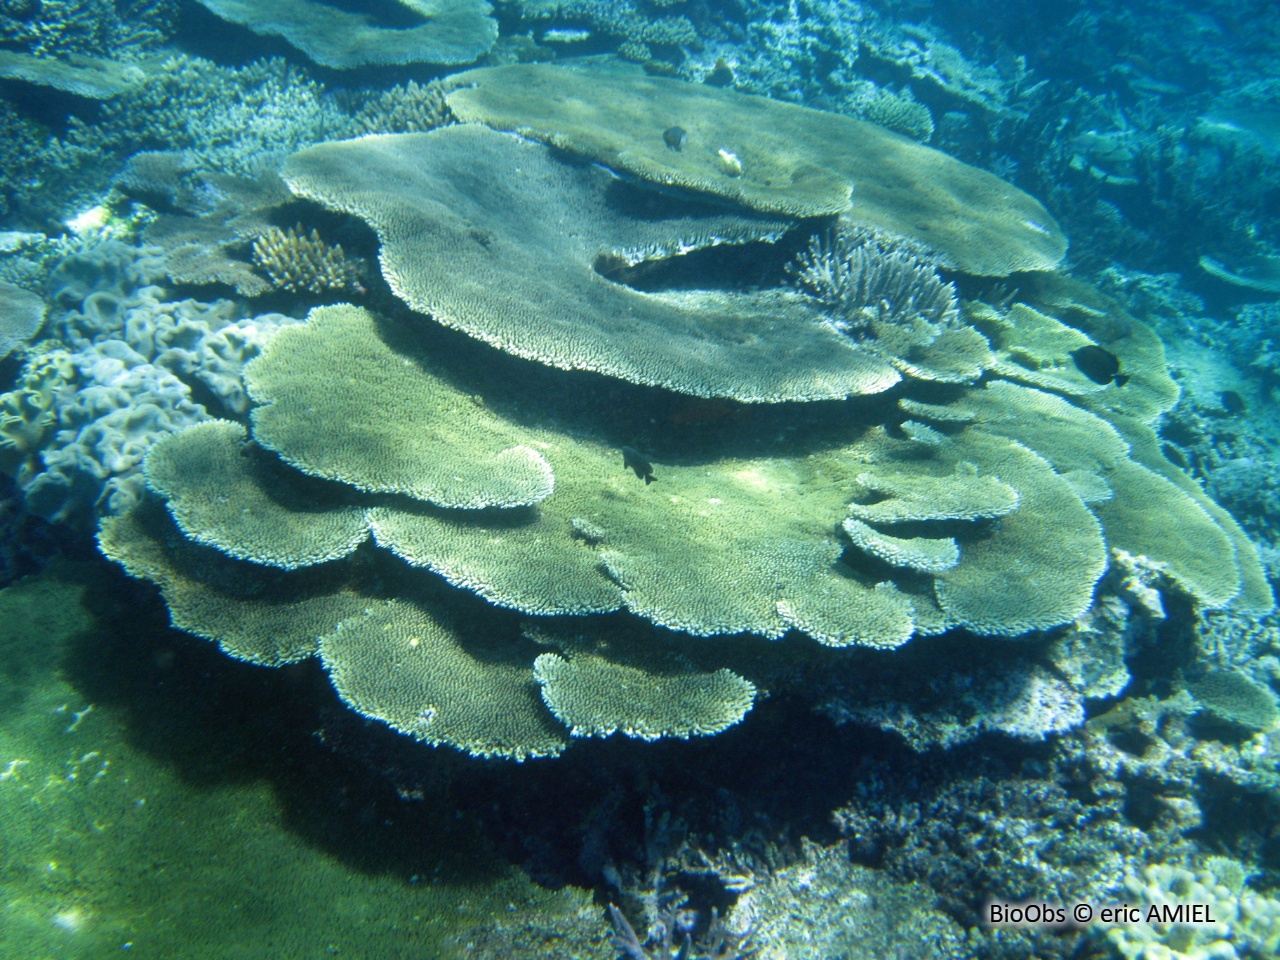 Acropore, corail table ou branchu - Acropora sp - eric AMIEL - BioObs